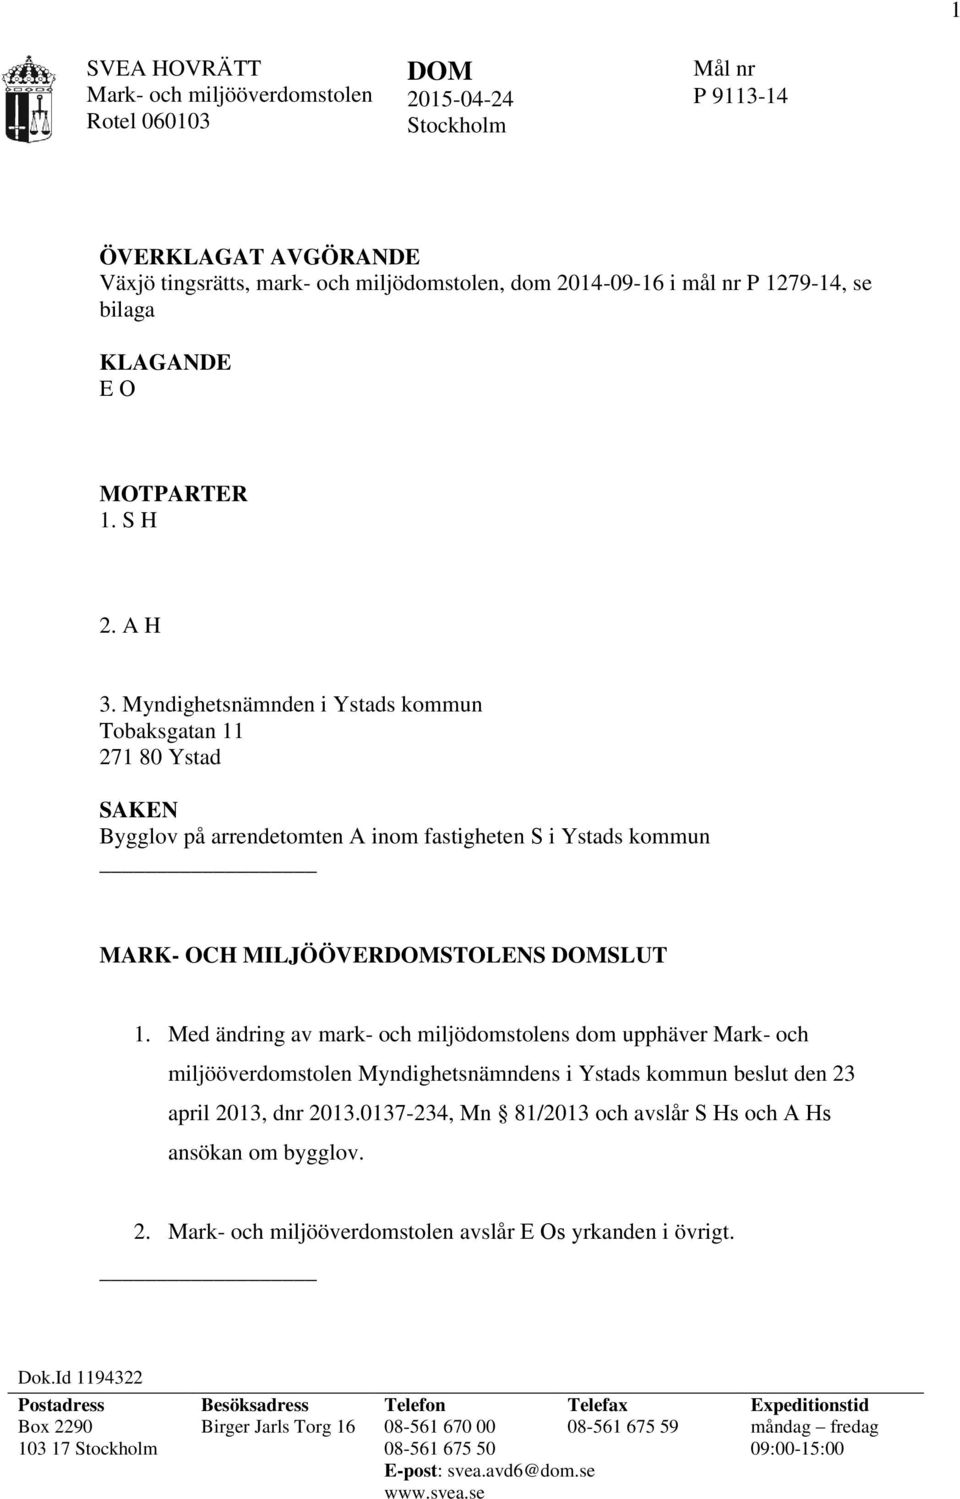 Med ändring av mark- och miljödomstolens dom upphäver Mark- och miljööverdomstolen Myndighetsnämndens i Ystads kommun beslut den 23 april 2013, dnr 2013.